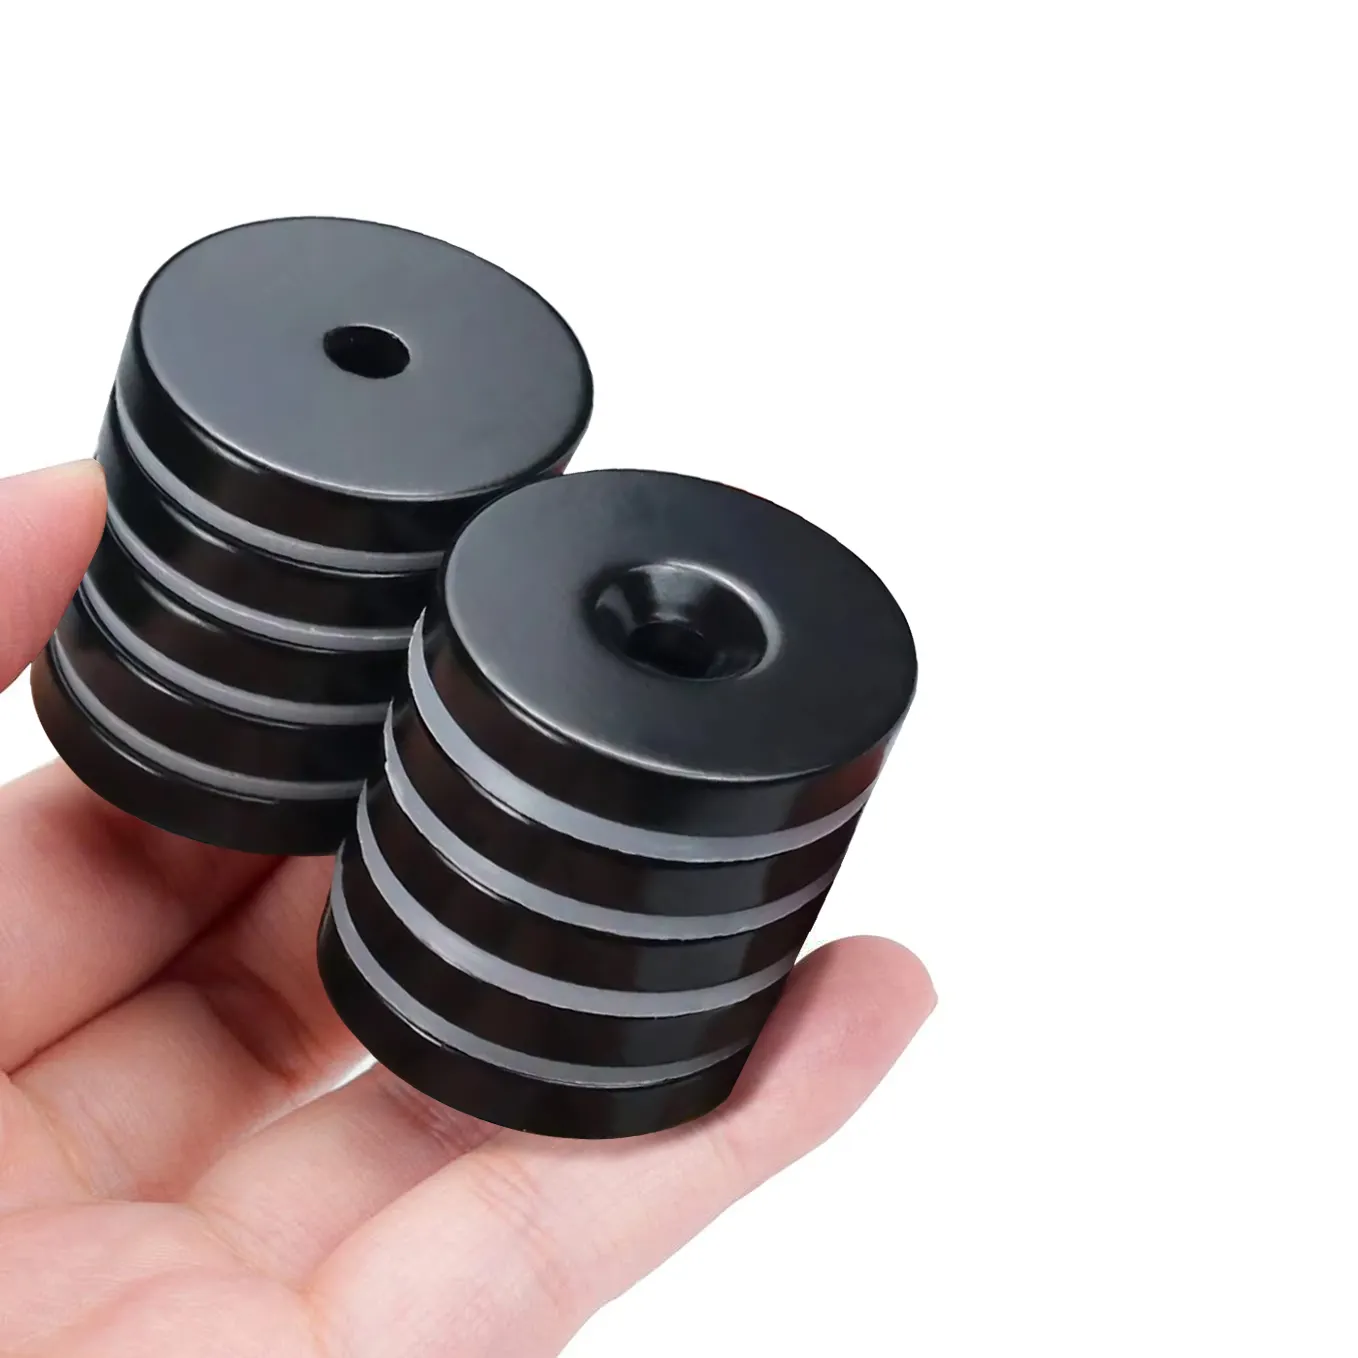 निर्माता सुपर मजबूत गोल नियोडिमियम डिस्क काउंटरसंक मैग्नेट की आपूर्ति करते हैं